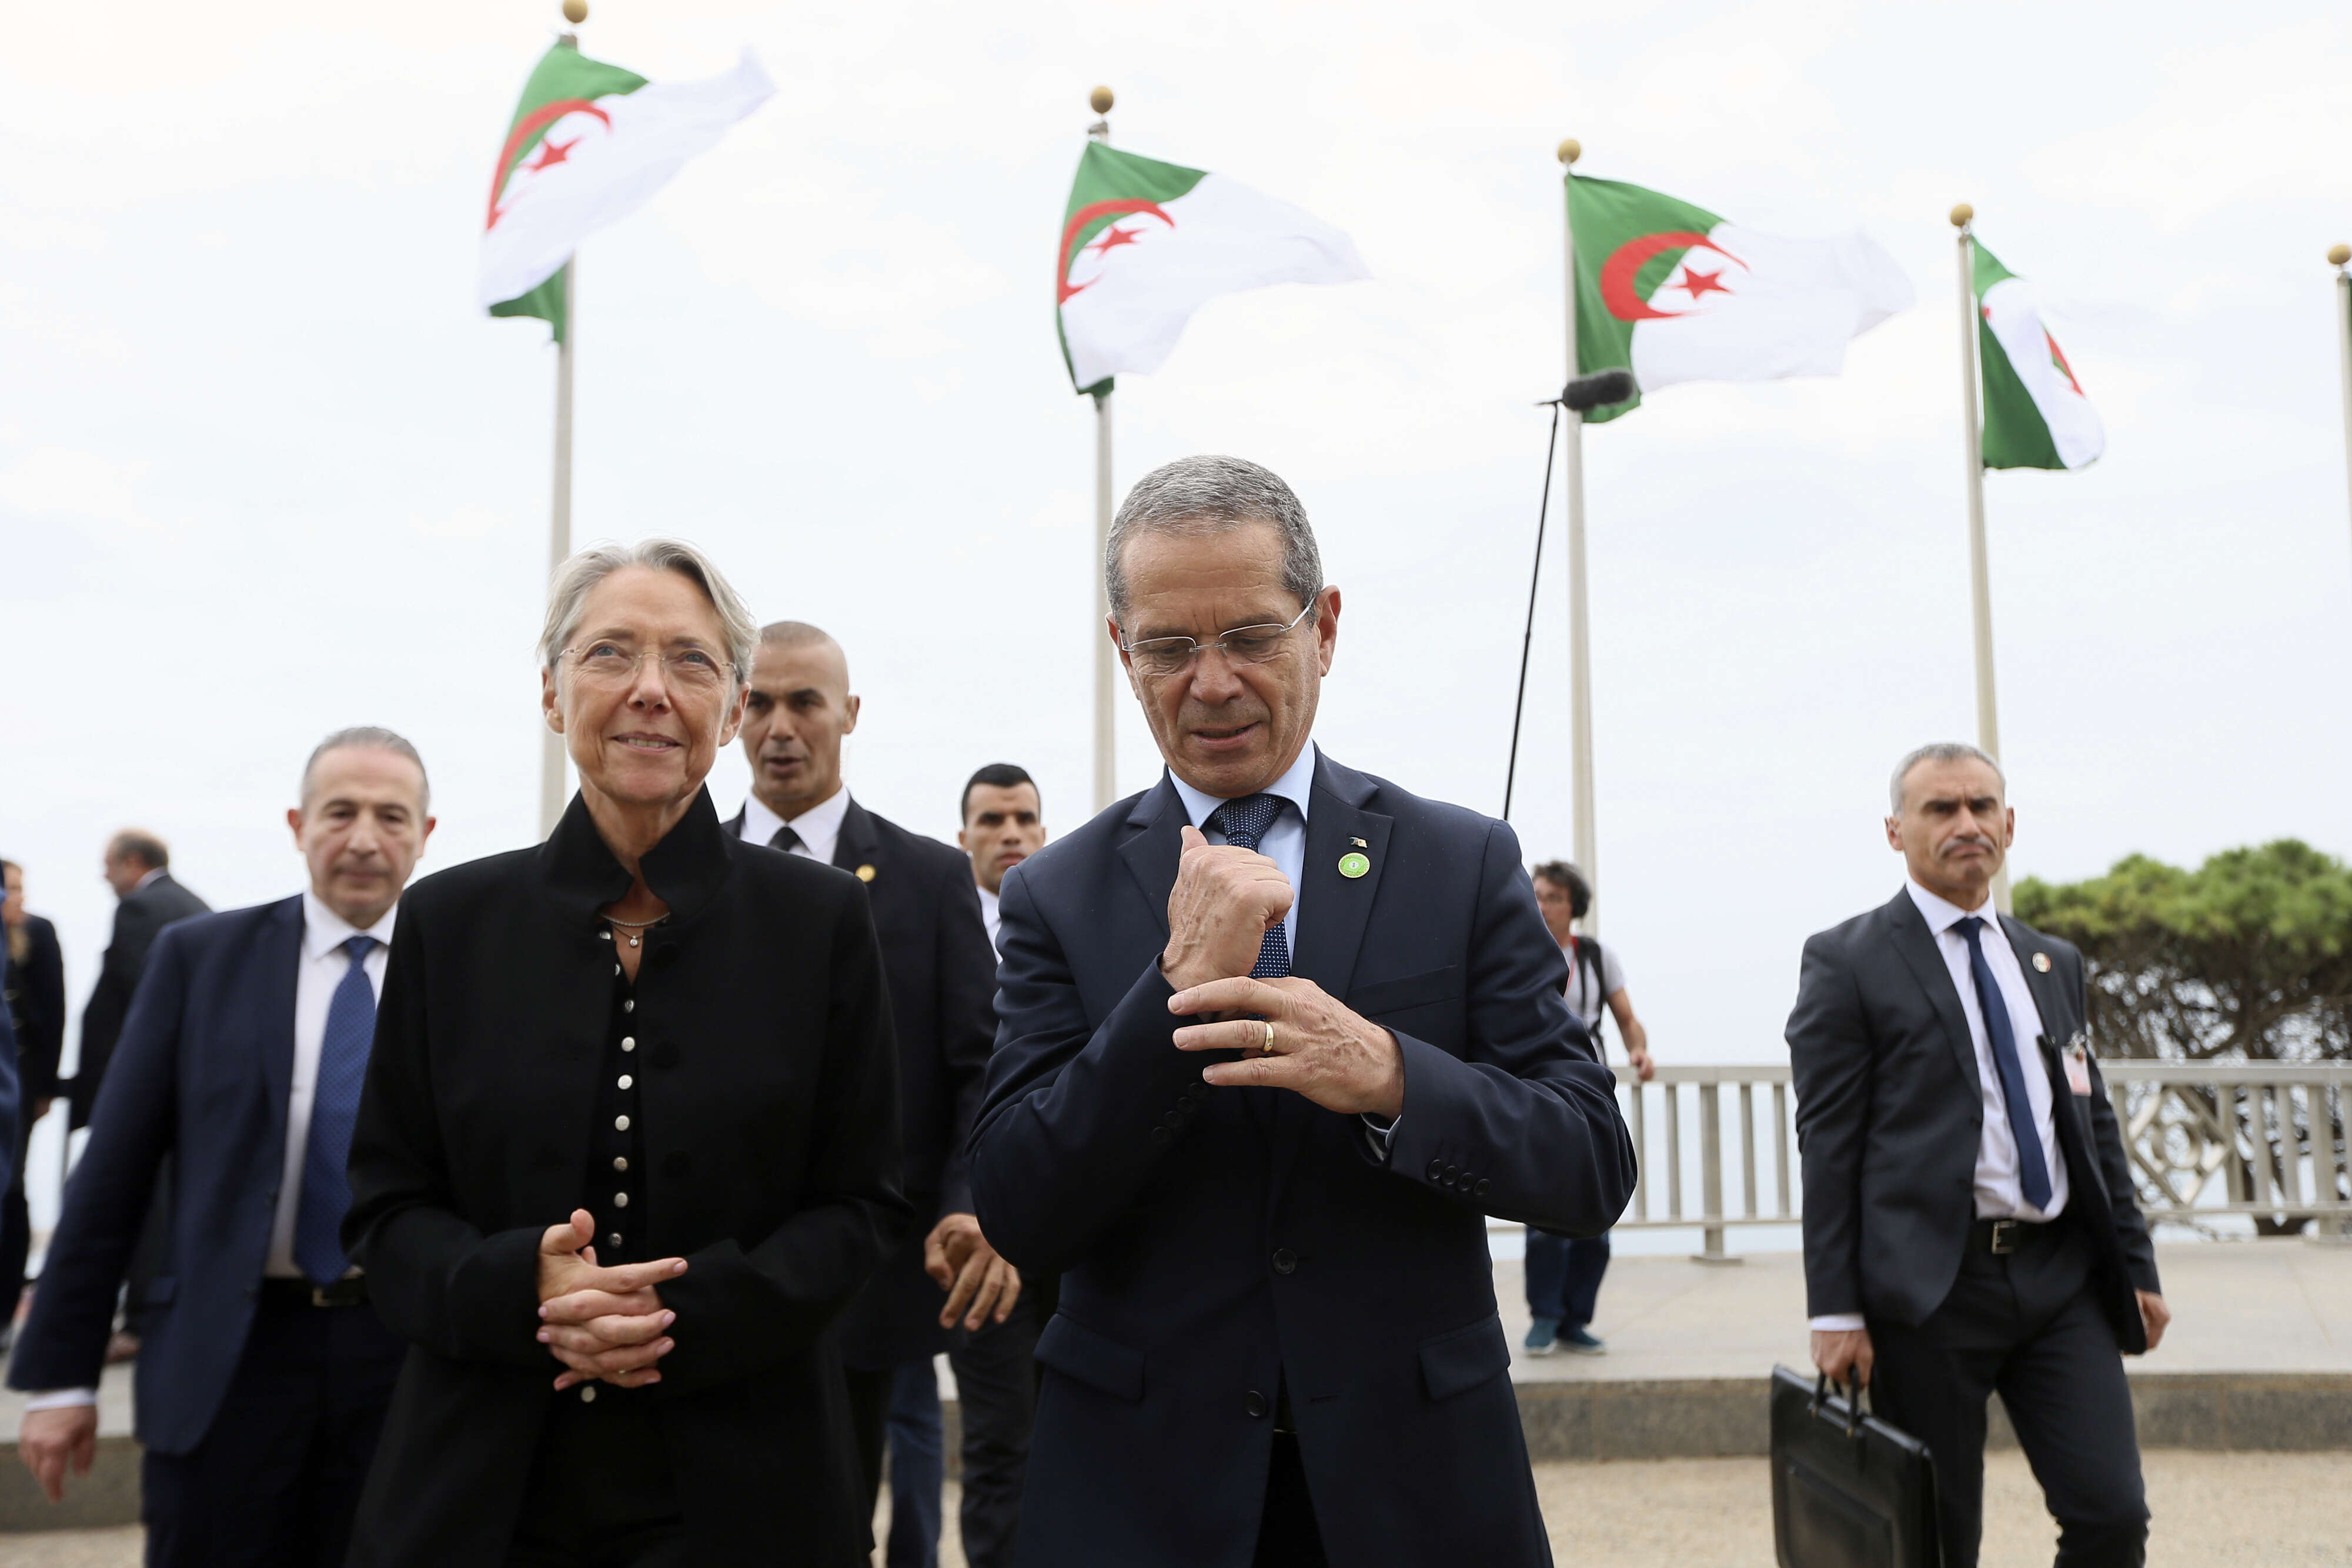 باريس تريد إعطاء "دفع جديد" للعلاقة الفرنسية الجزائرية.